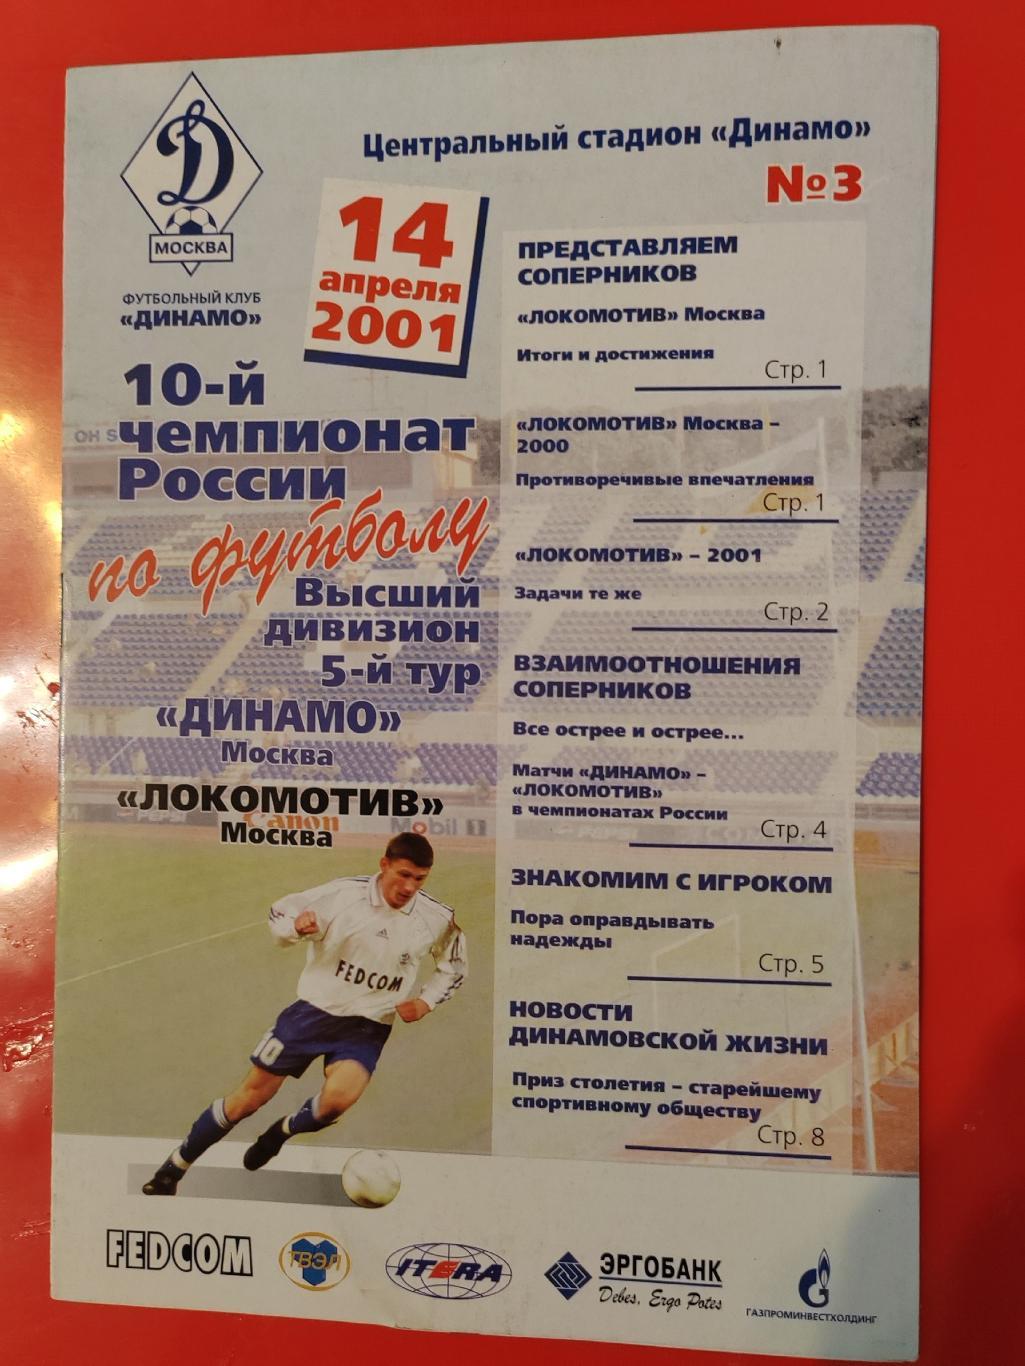 2001 Динамо - Локомотив (Москва)